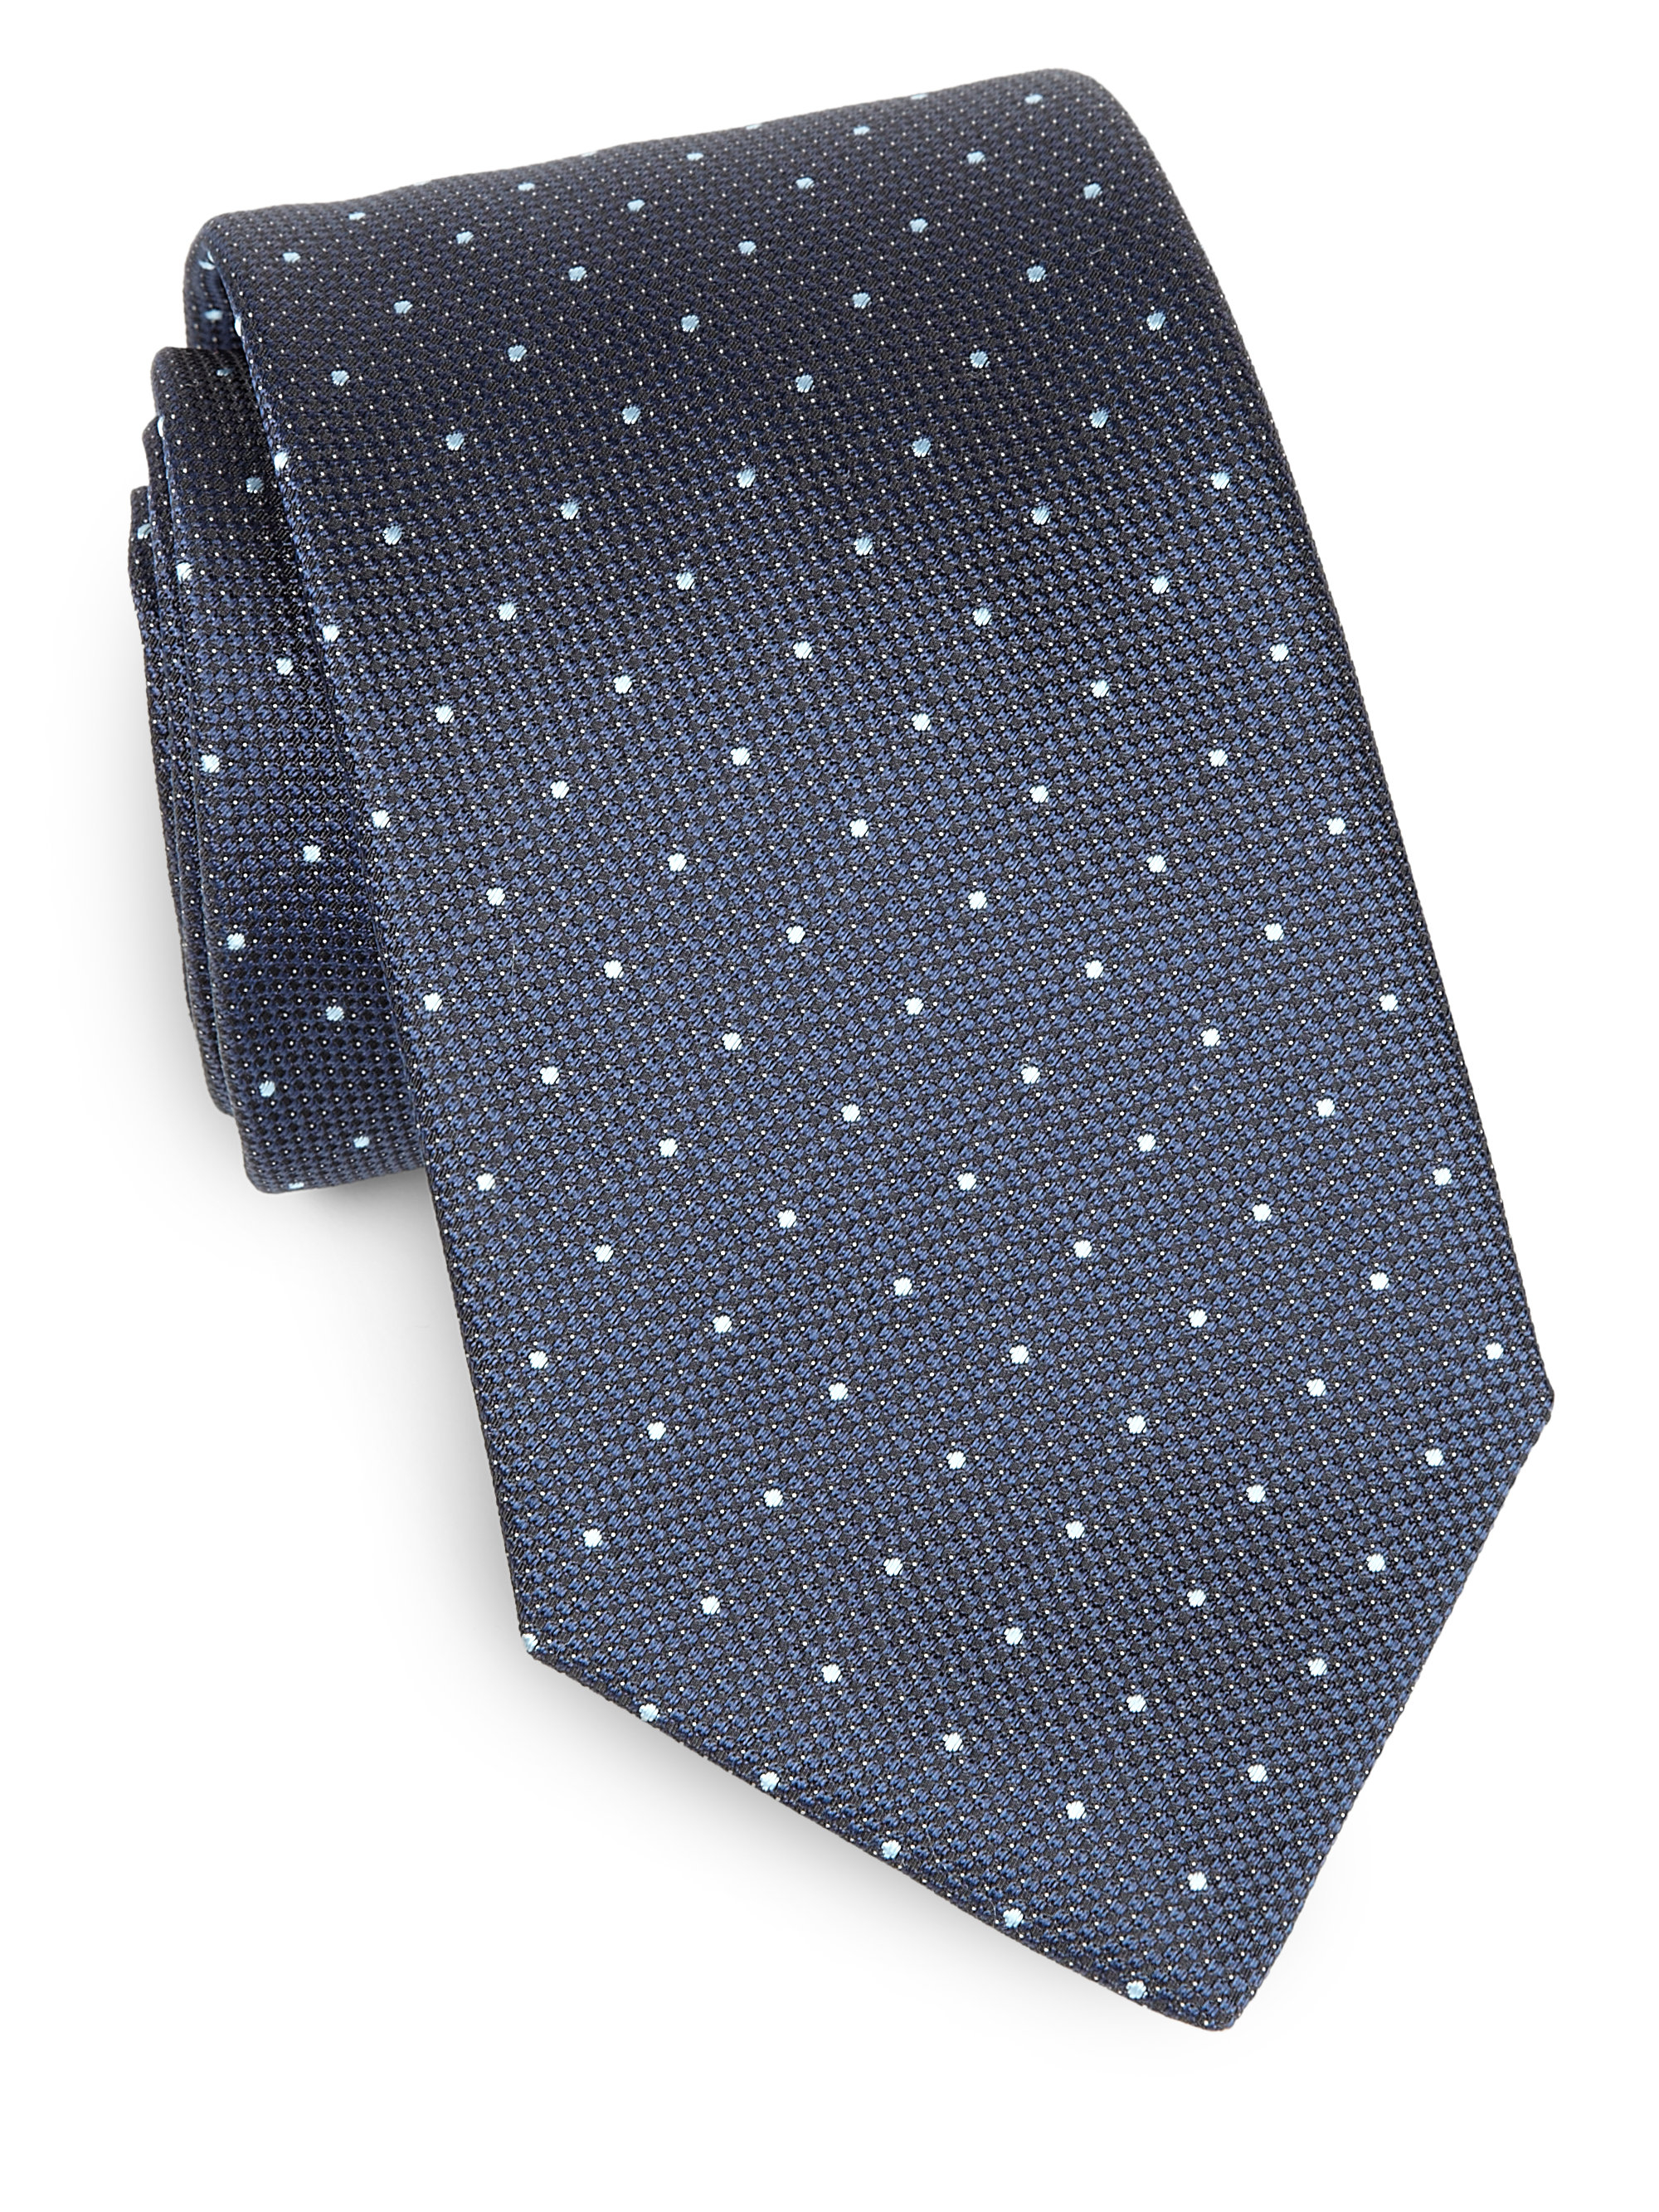 BOSS by HUGO BOSS Silk Dot Tie in Blue for Men - Lyst